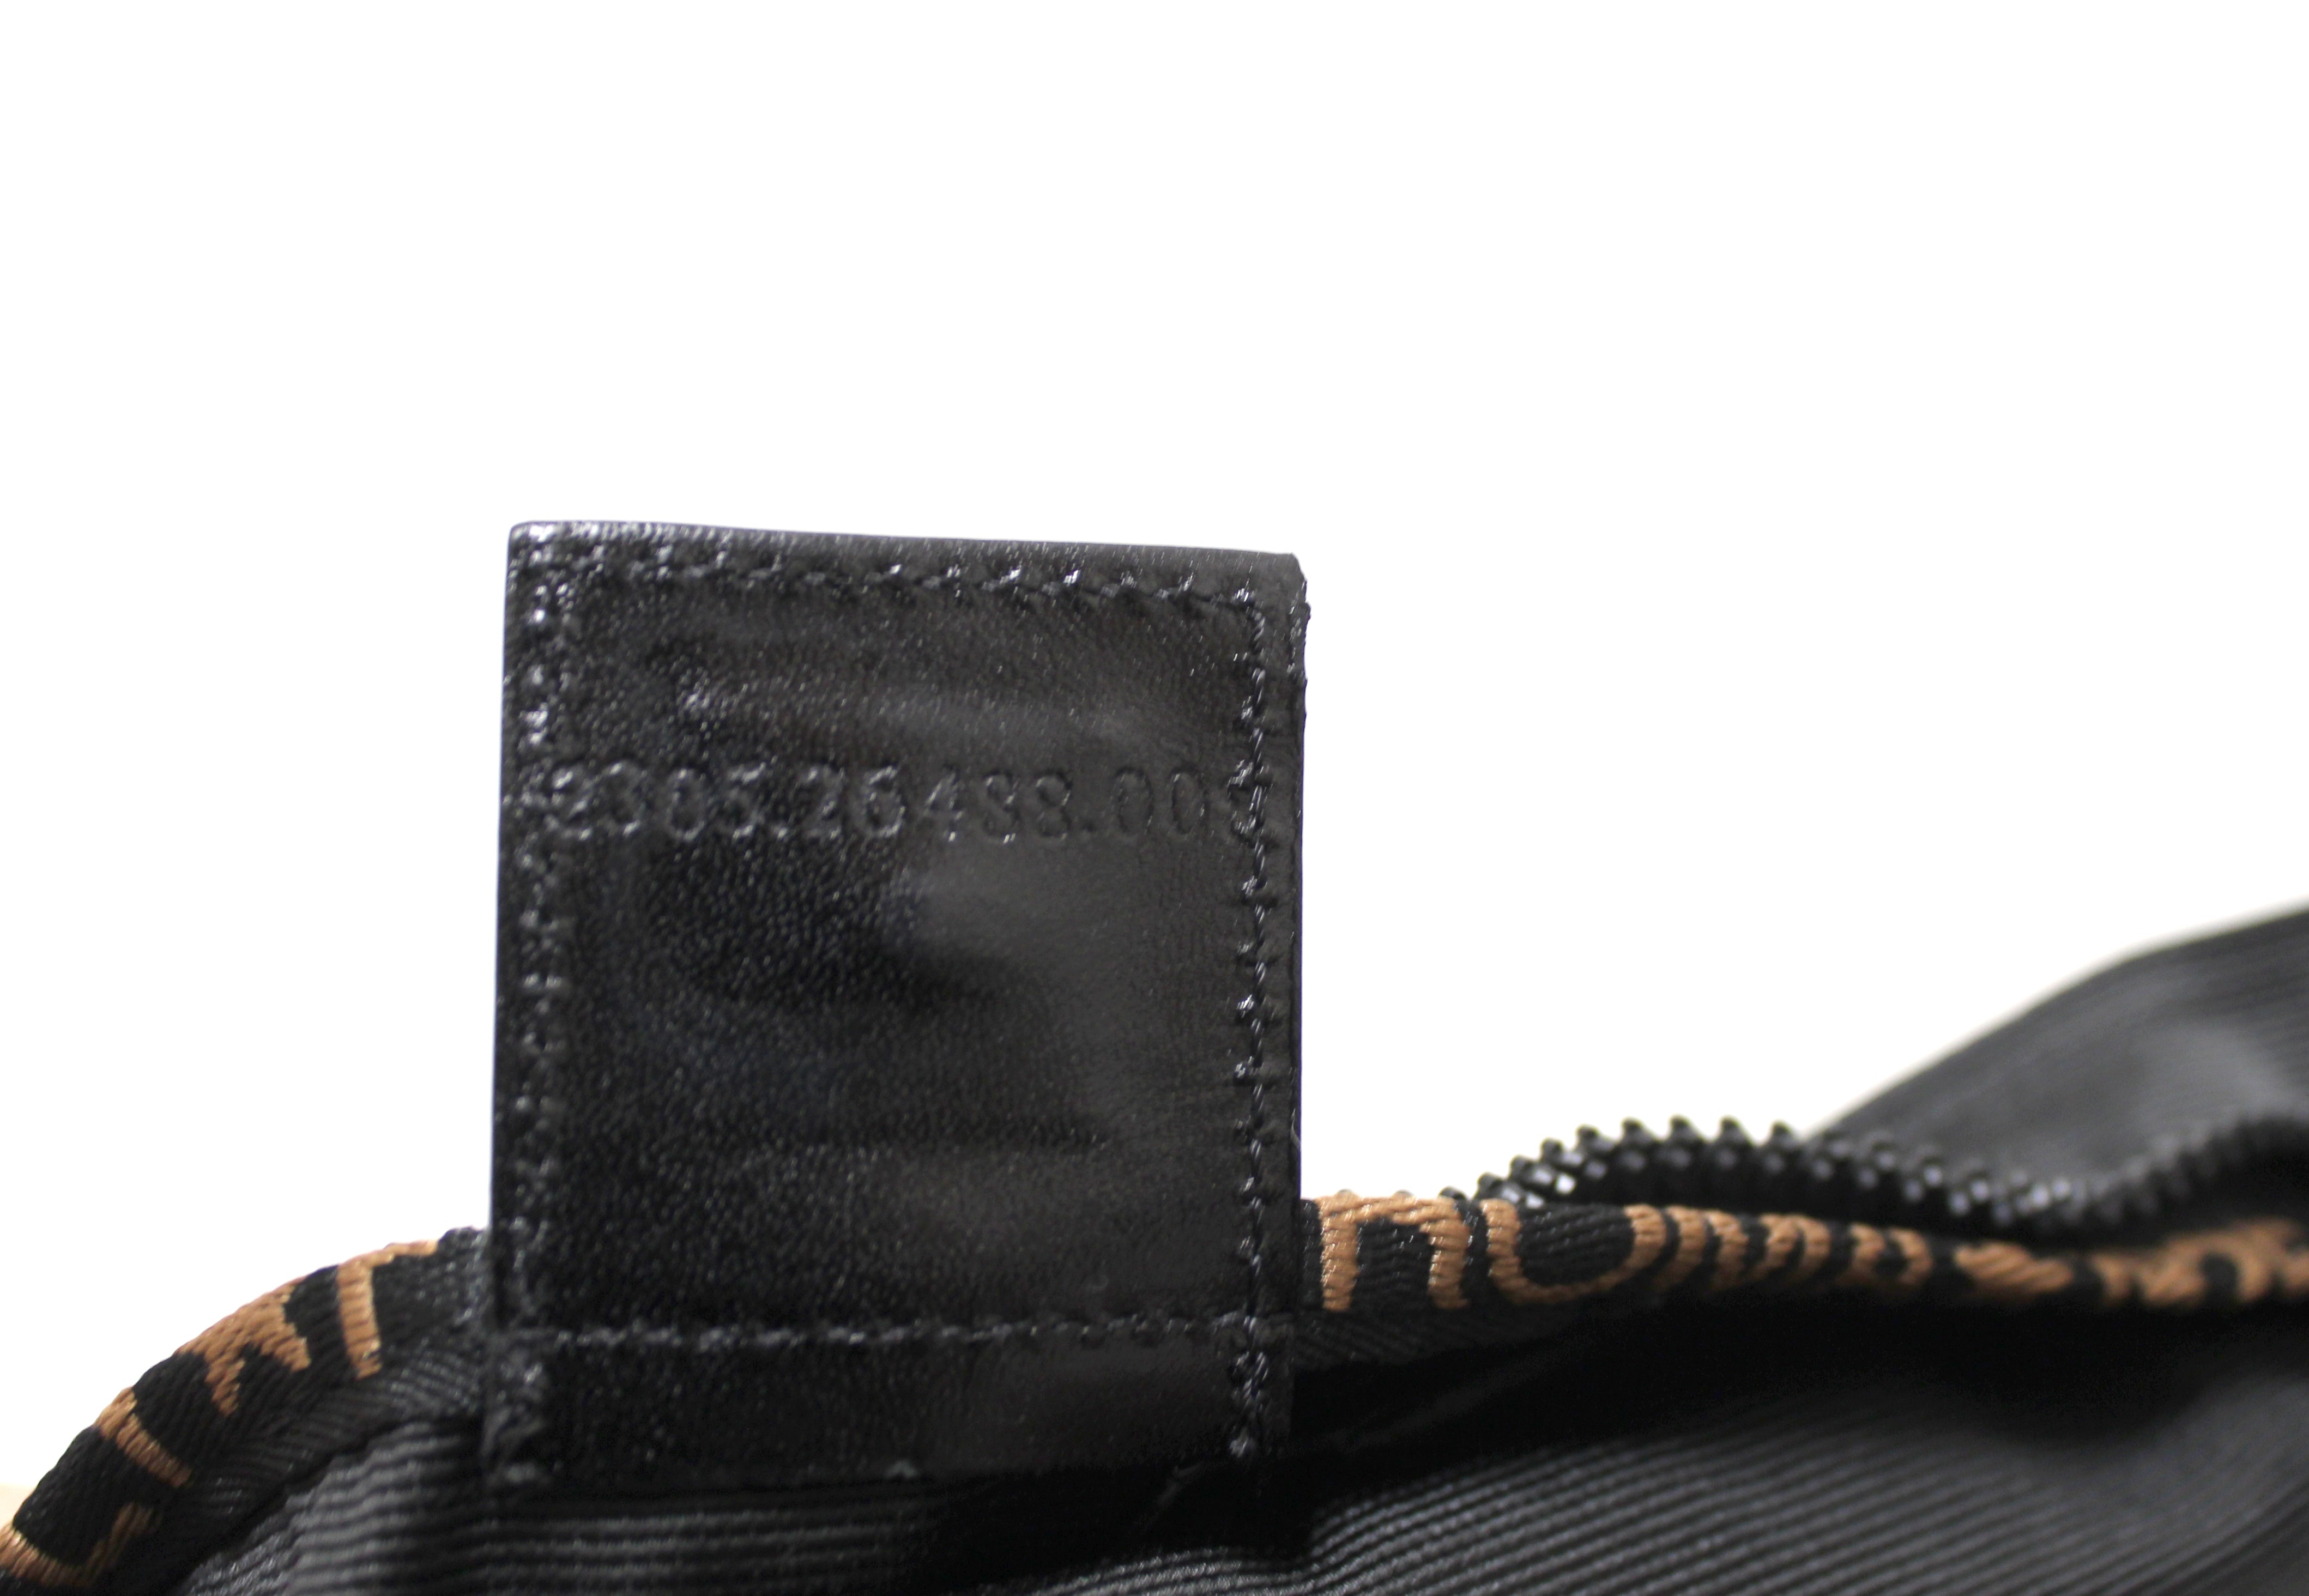 Authentic Fendi Black Fabric Square Tote handbag